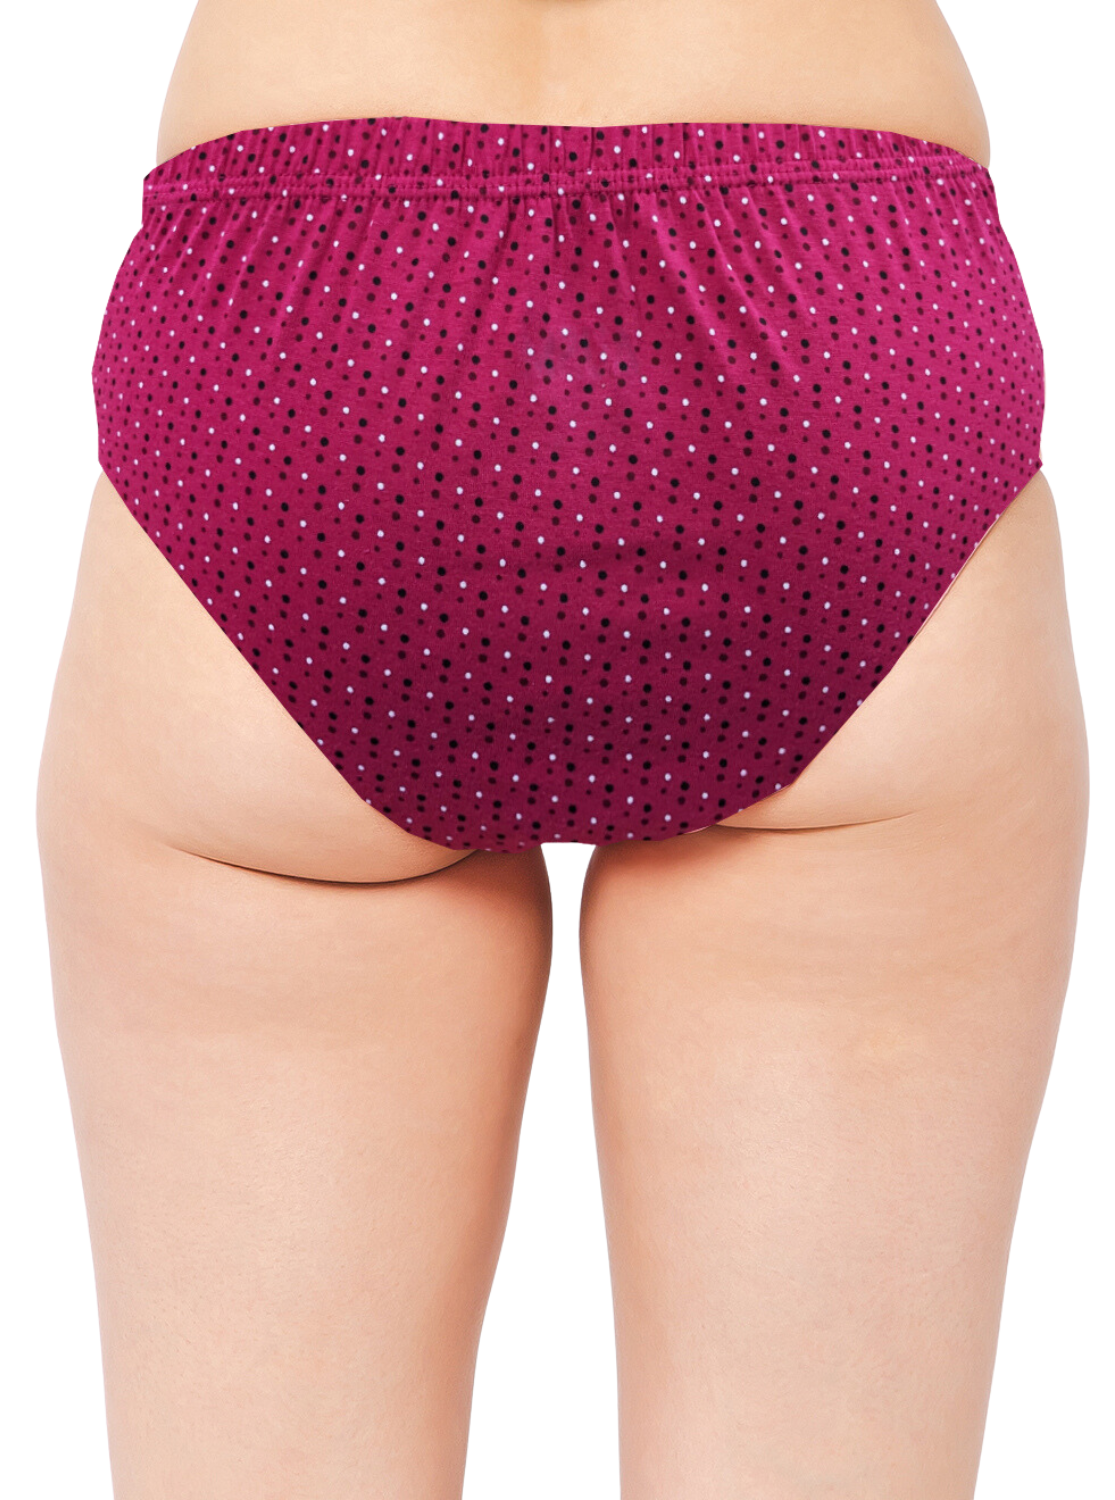 AUSM Premium Cotton Printed Panties | Superior Quality | Flexible Elastic Fit | Pack of 3